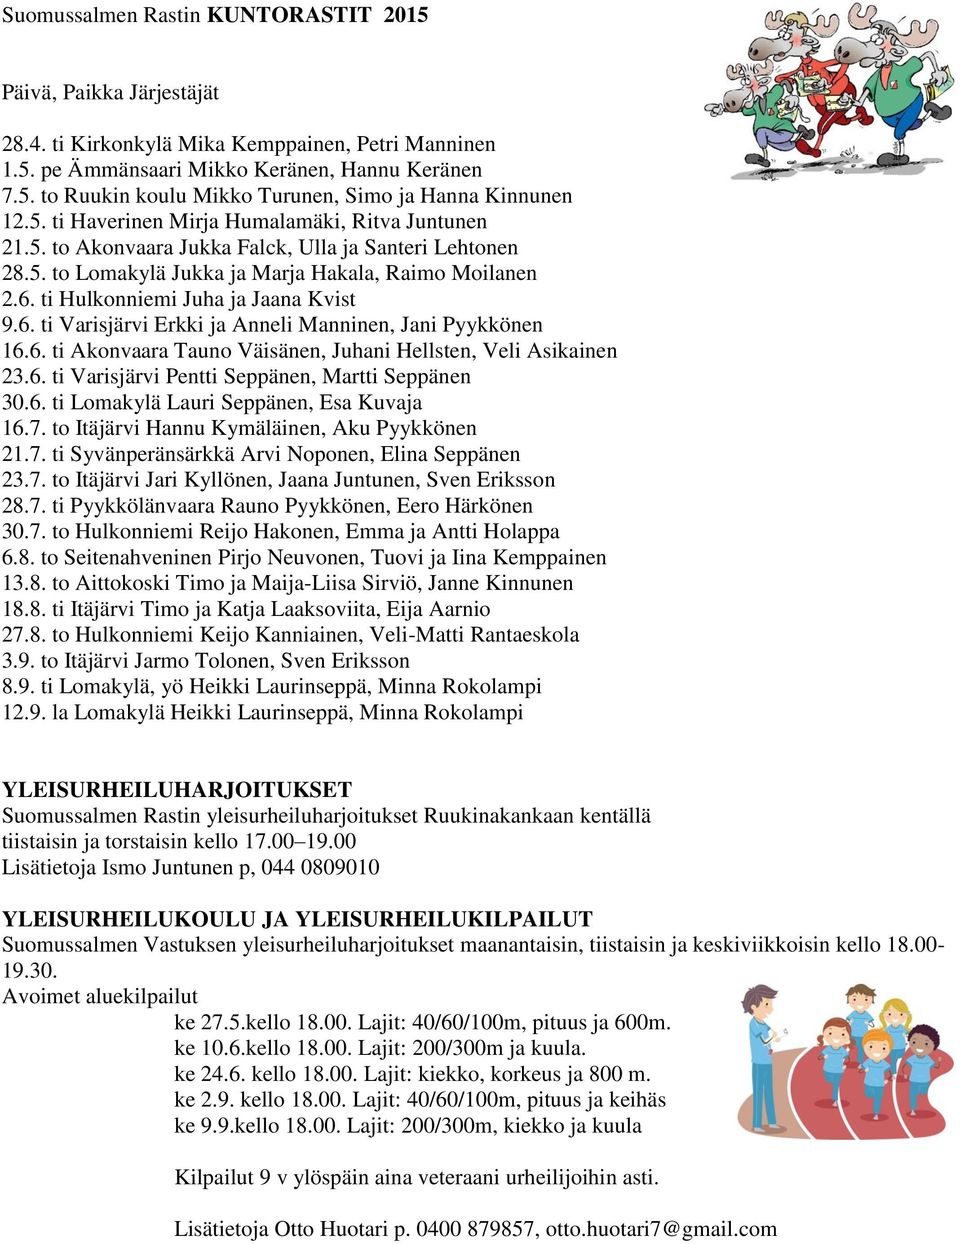 ti Hulkonniemi Juha ja Jaana Kvist 9.6. ti Varisjärvi Erkki ja Anneli Manninen, Jani Pyykkönen 16.6. ti Akonvaara Tauno Väisänen, Juhani Hellsten, Veli Asikainen 23.6. ti Varisjärvi Pentti Seppänen, Martti Seppänen 30.